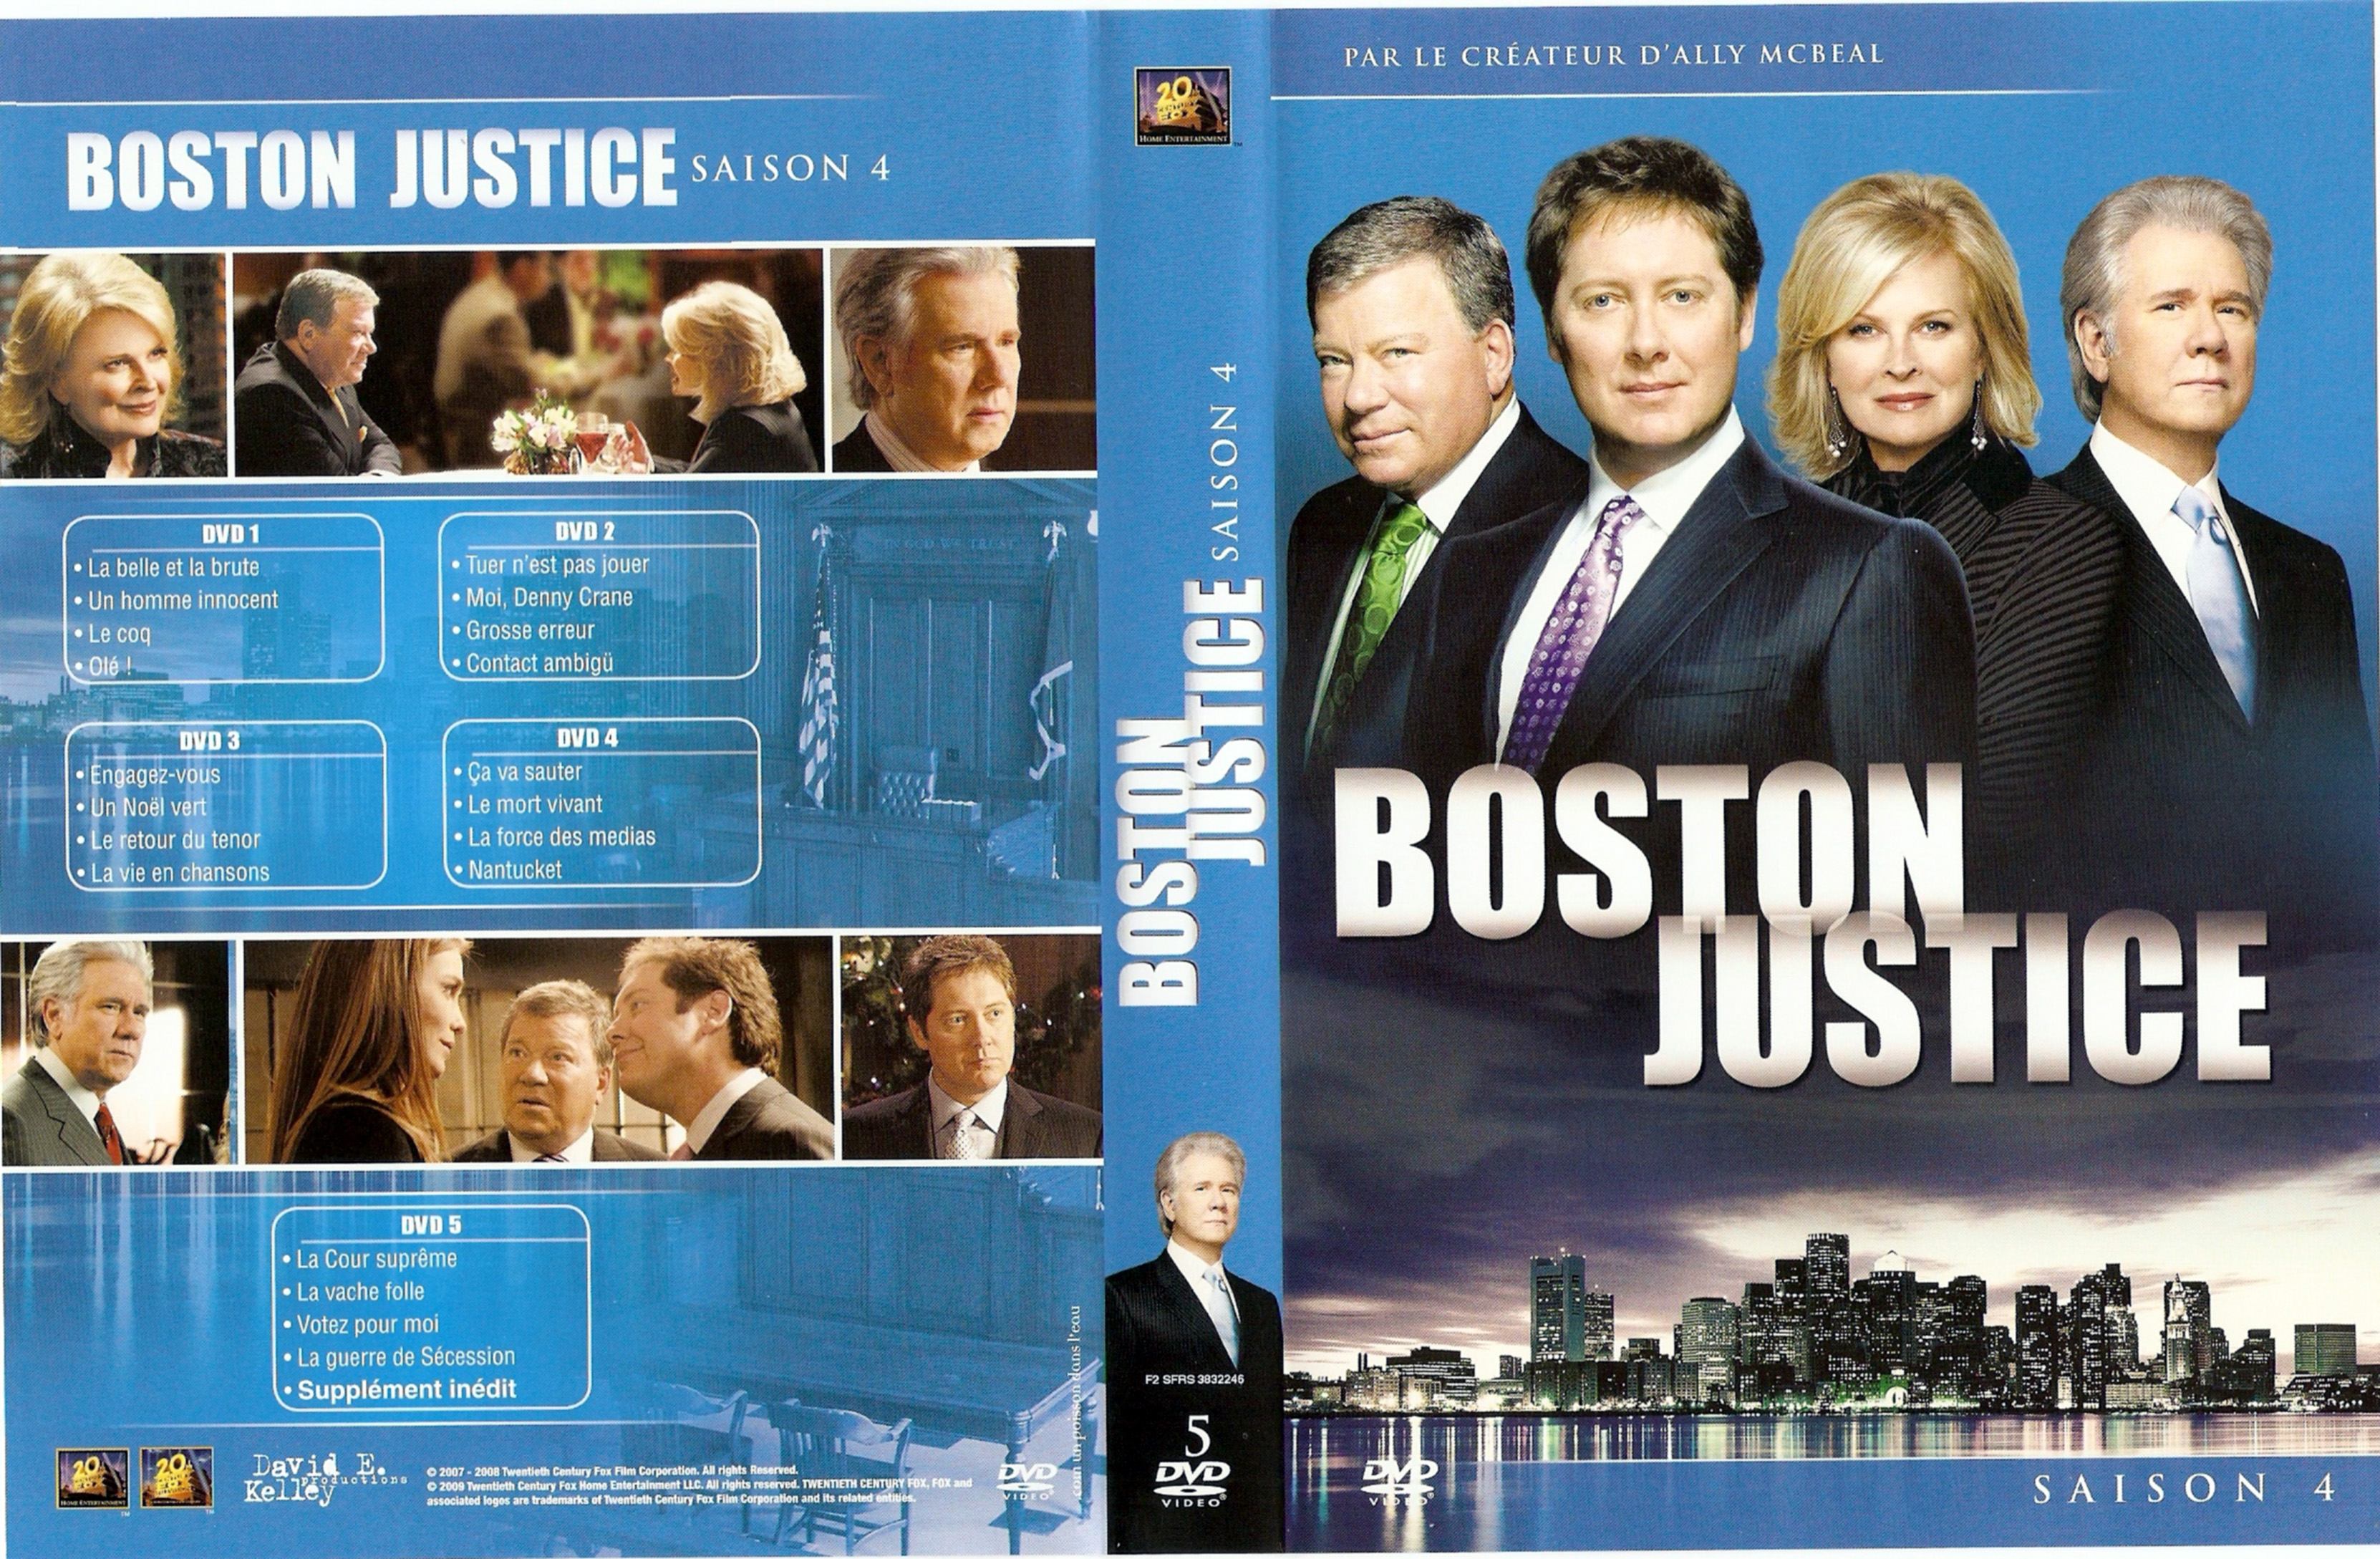 Jaquette DVD Boston justice Saison 4 COFFRET